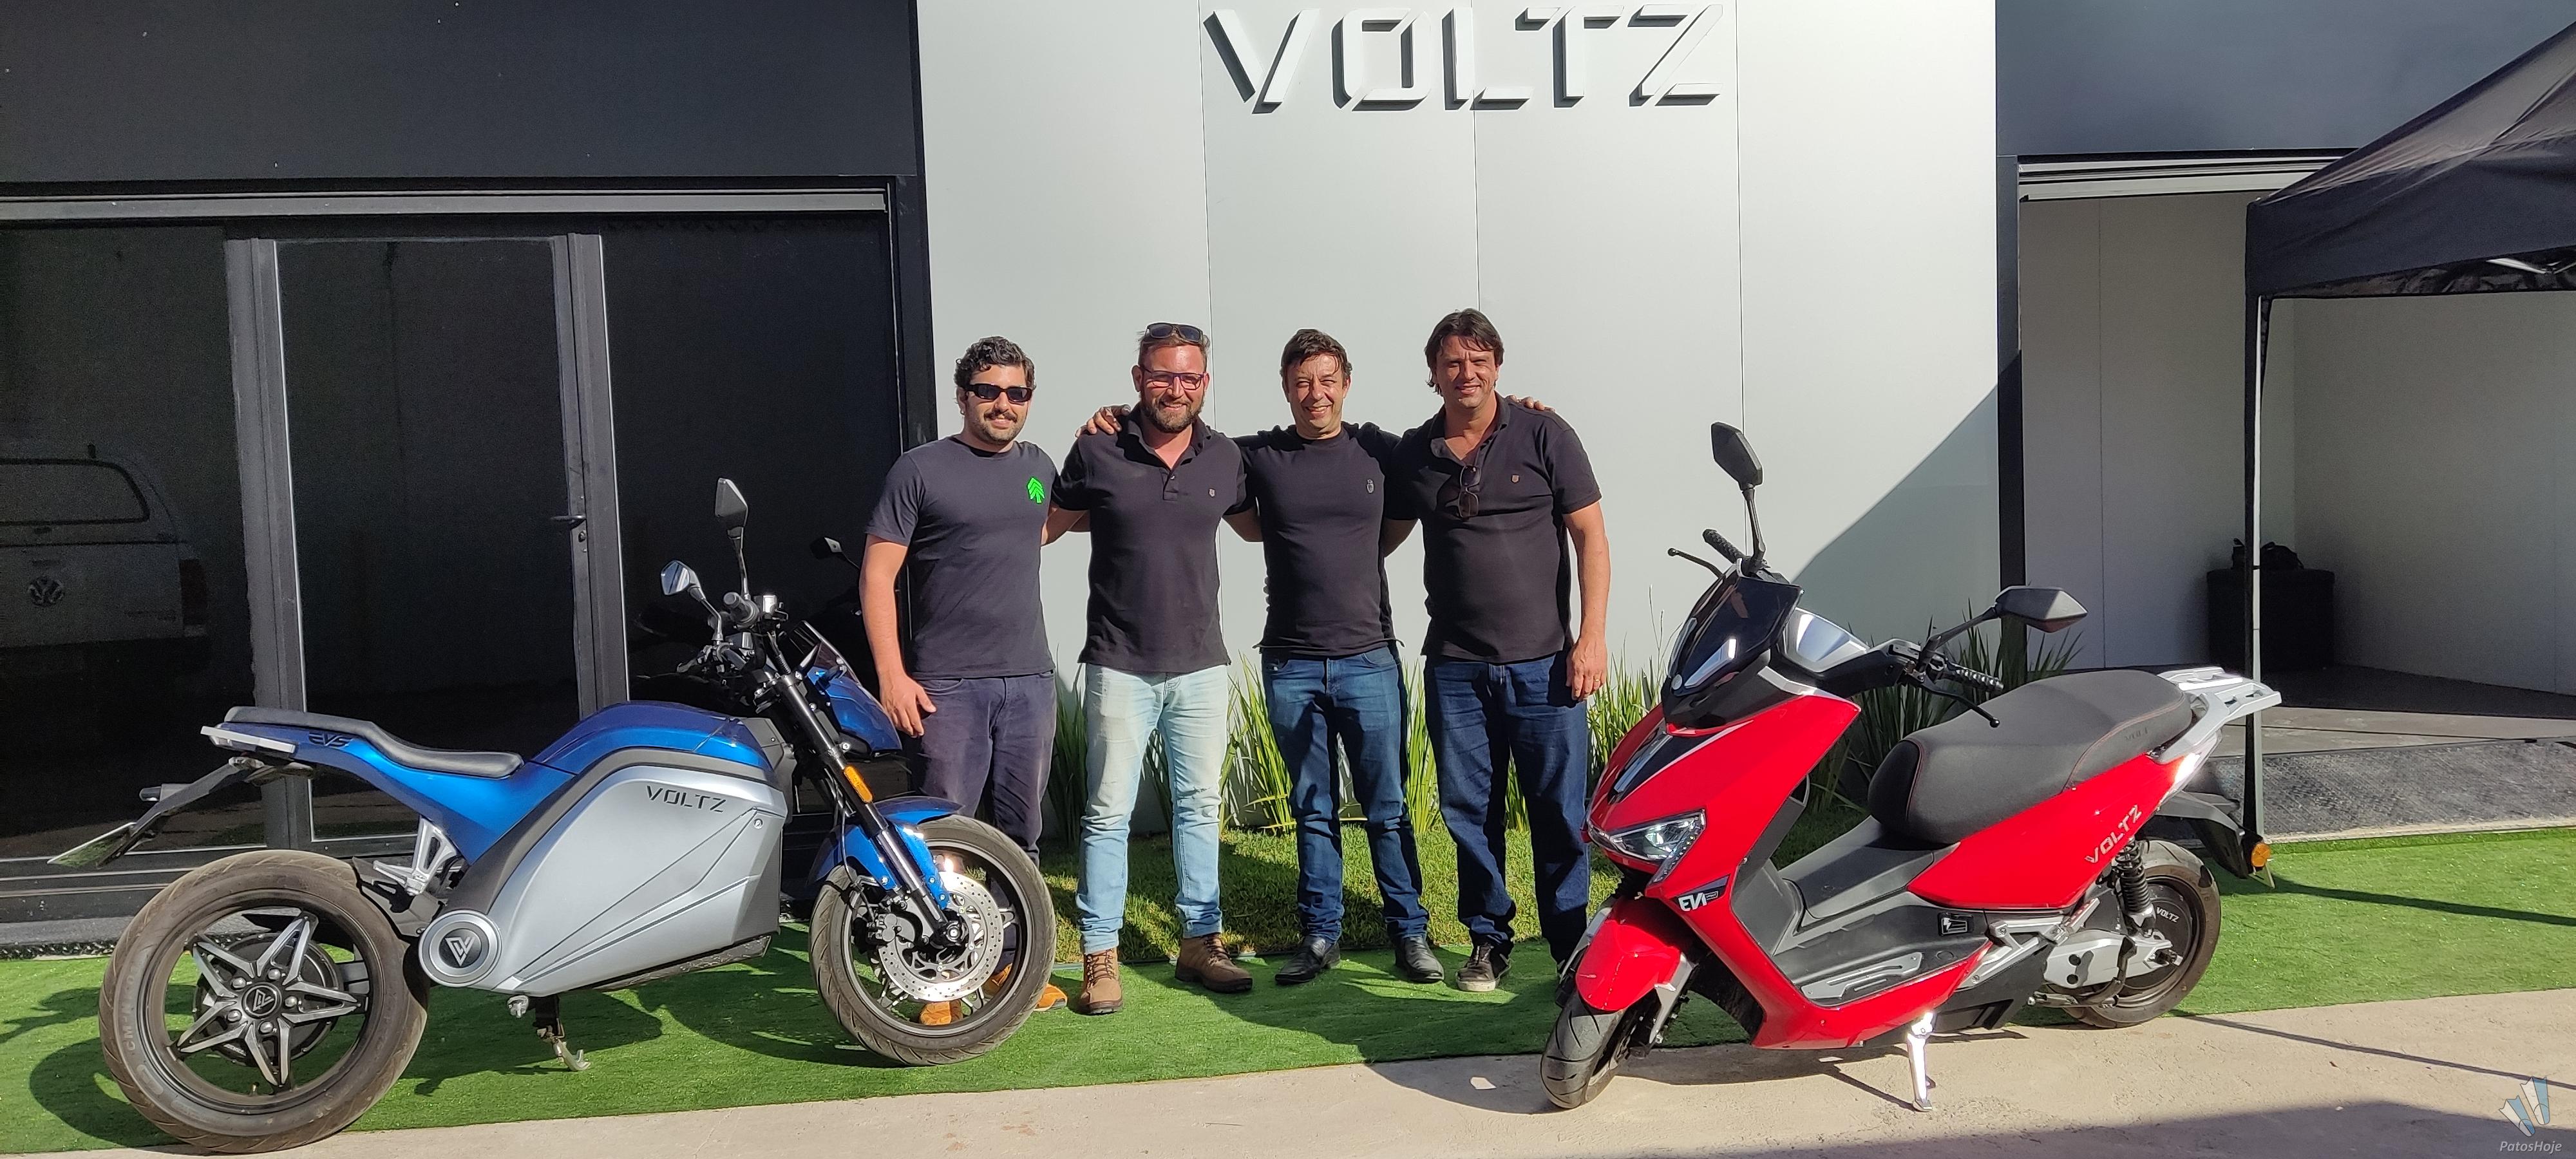 Líder do segmento, Voltz reajusta preços de motos elétricas no Brasil